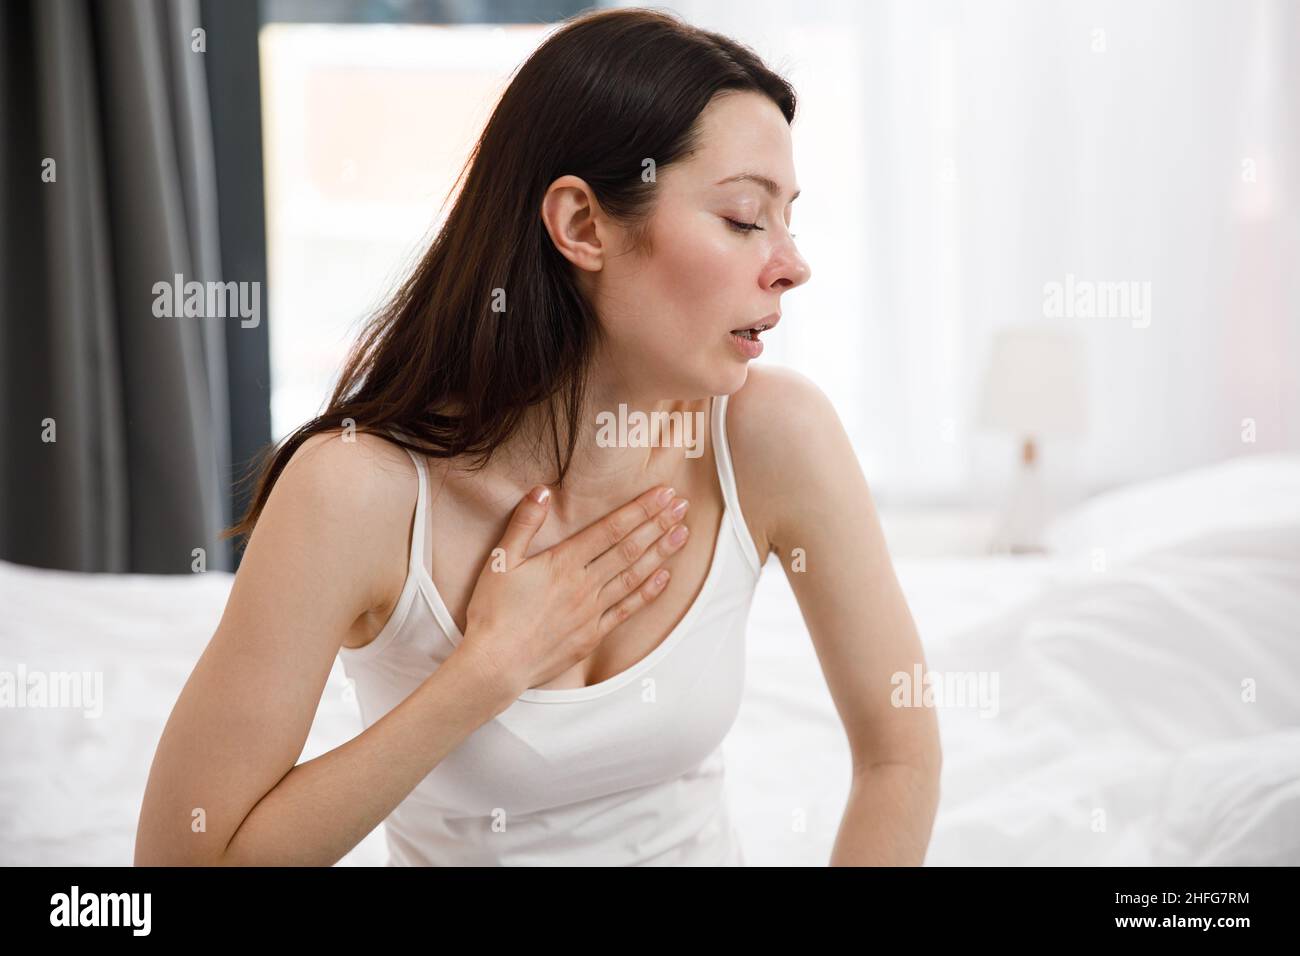 Retrato de una joven malsana que tose mucho, que sufre de tos, tiene dolor en el pecho. La mujer enferma y desesperada tiene gripe. Frío, enfermedad Foto de stock